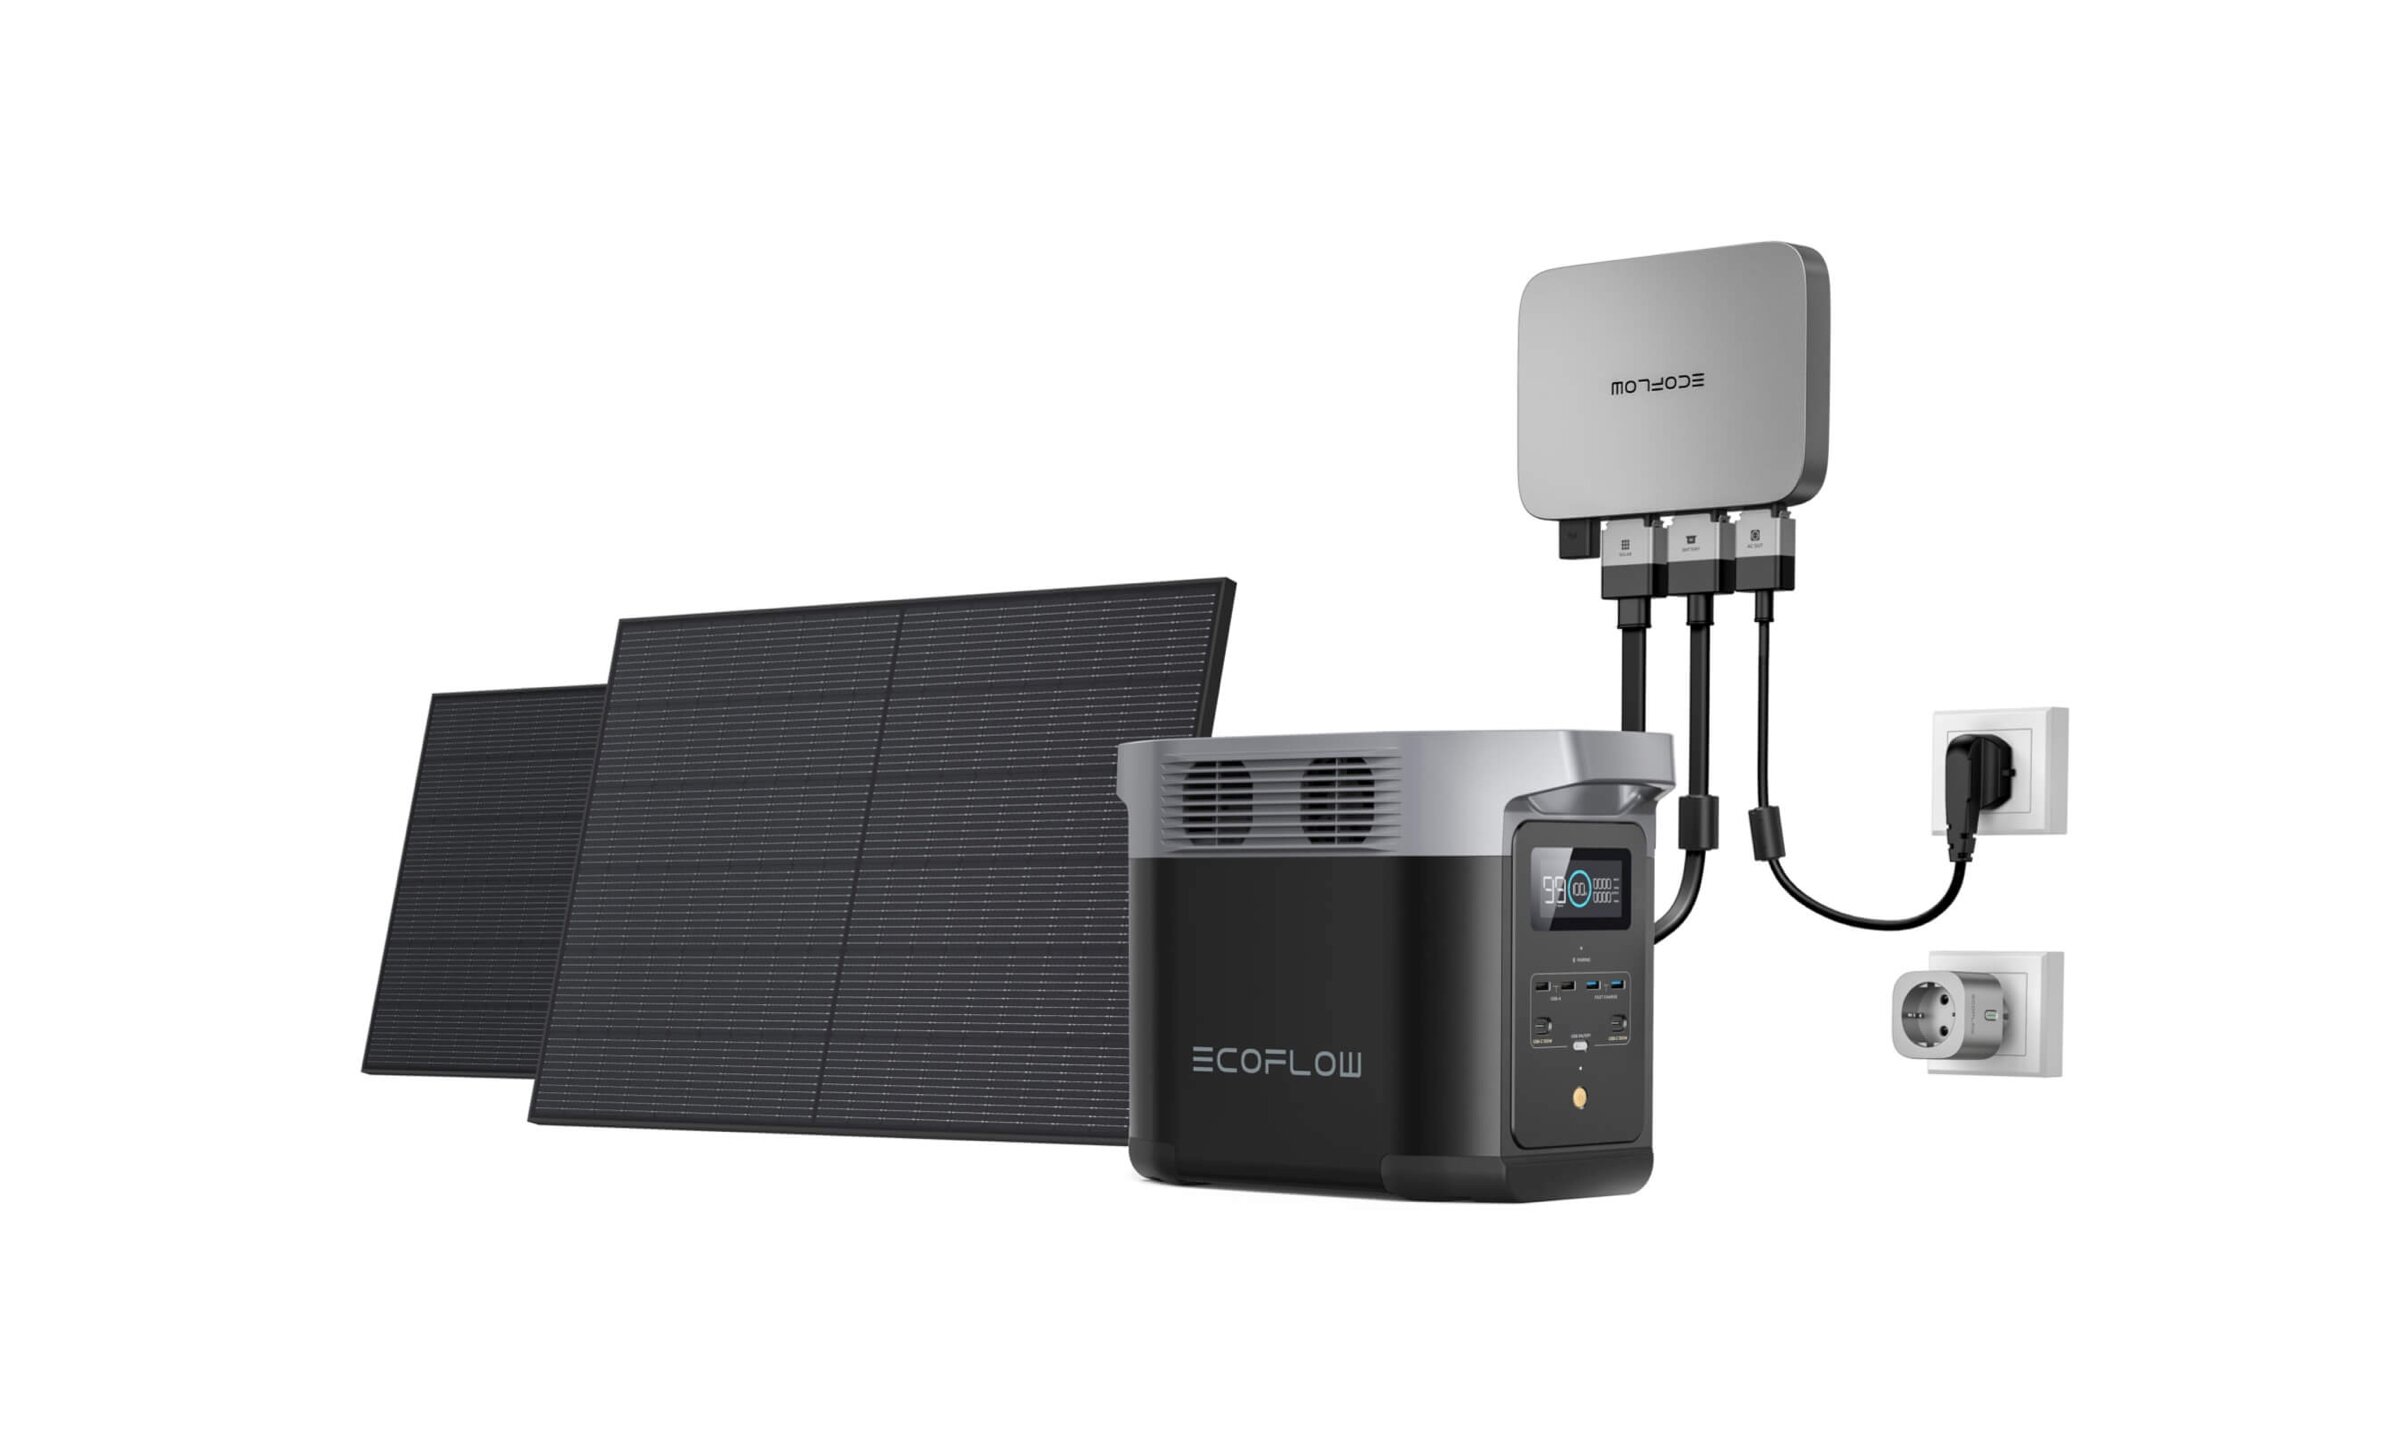 Kit solaire pour balcon PowerStream